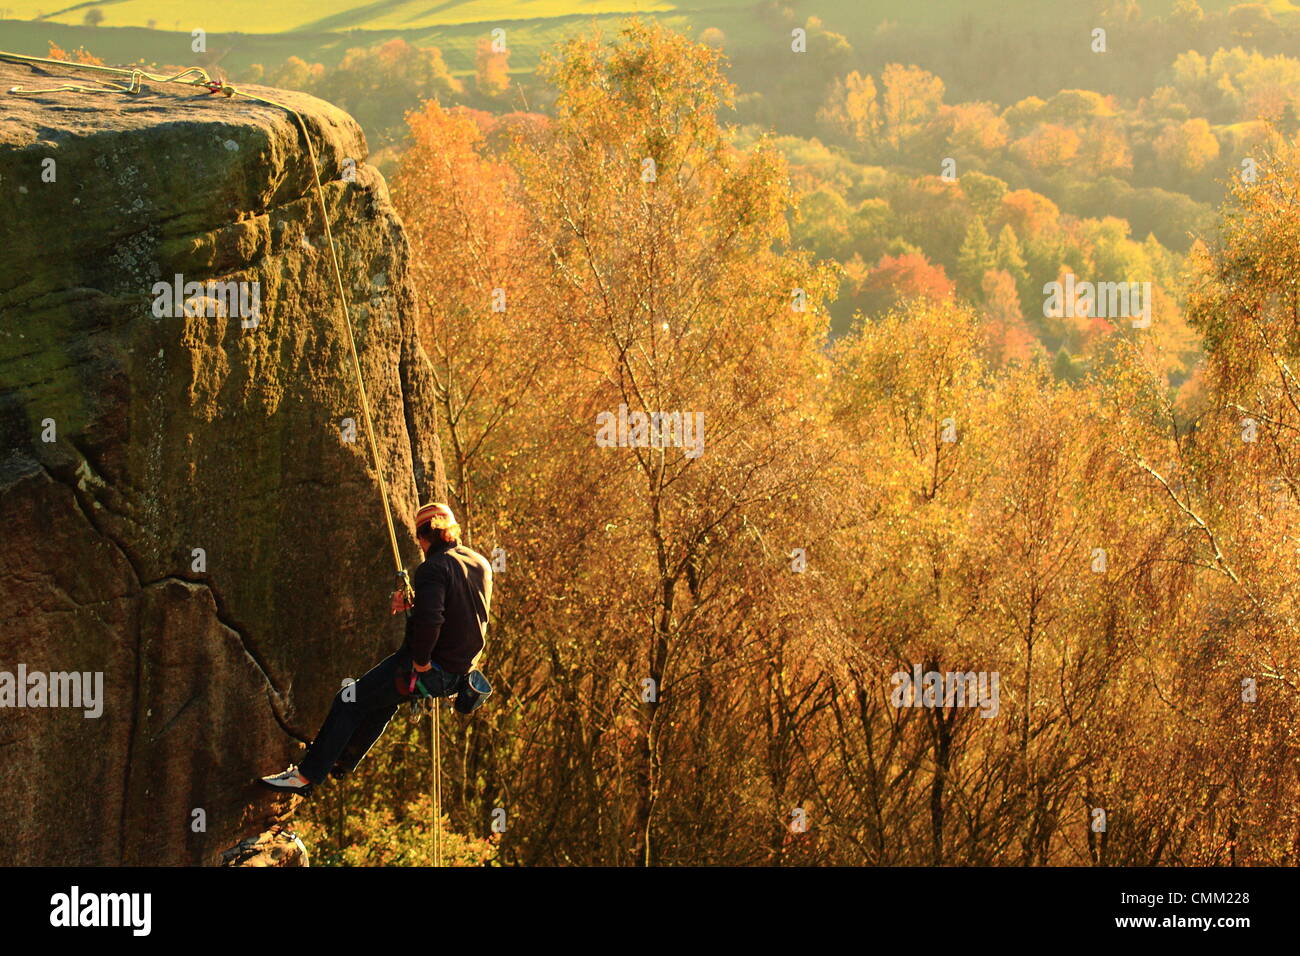 Un alpiniste s'attaque au-dessus du bord Froggatt Derwent Valley sur une belle journée d'automne, dans le Peak District, Derbyshire, Angleterre, Royaume-Uni Banque D'Images